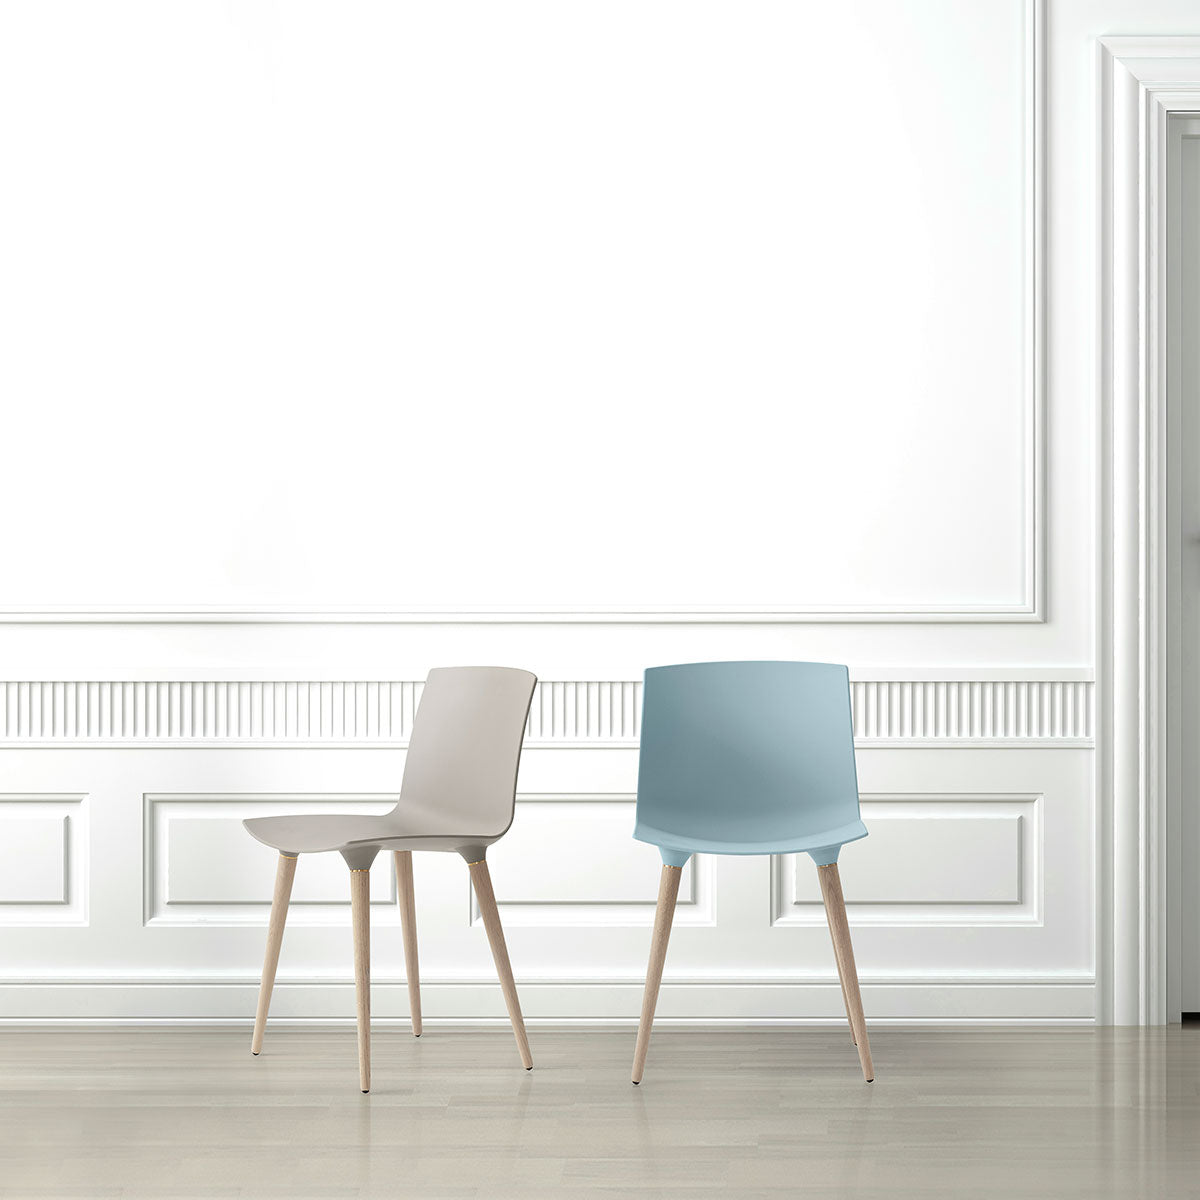 Andersen Furniture TAC -  sæde i isblå - ben i eg/hvid pigm. lak - DesignGaragen.dk.